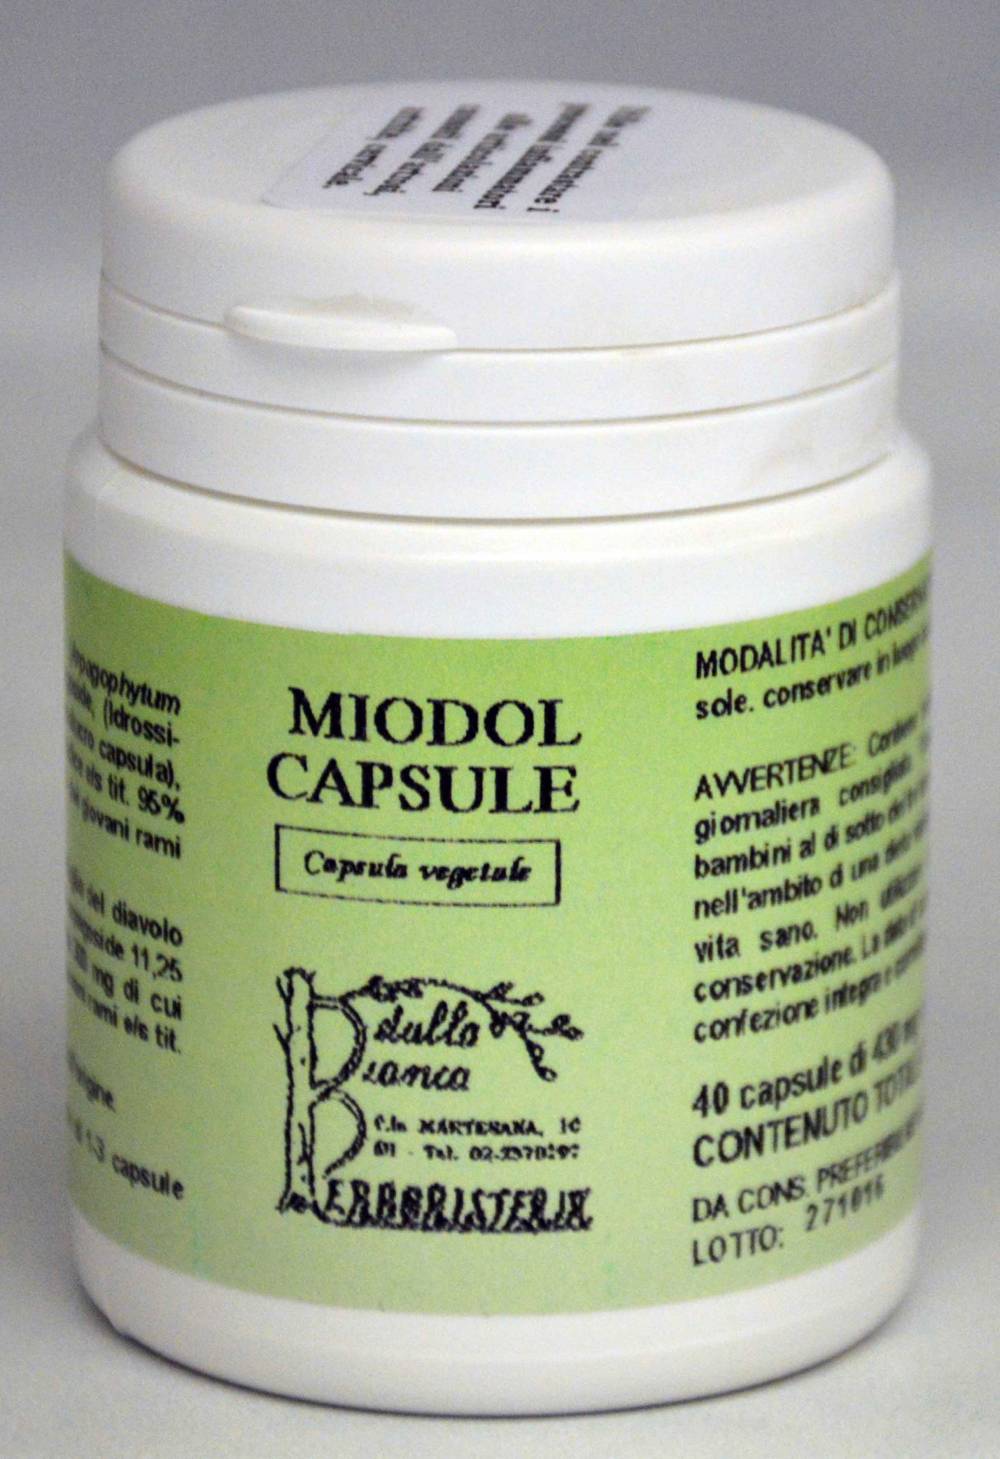 Miodol capsule